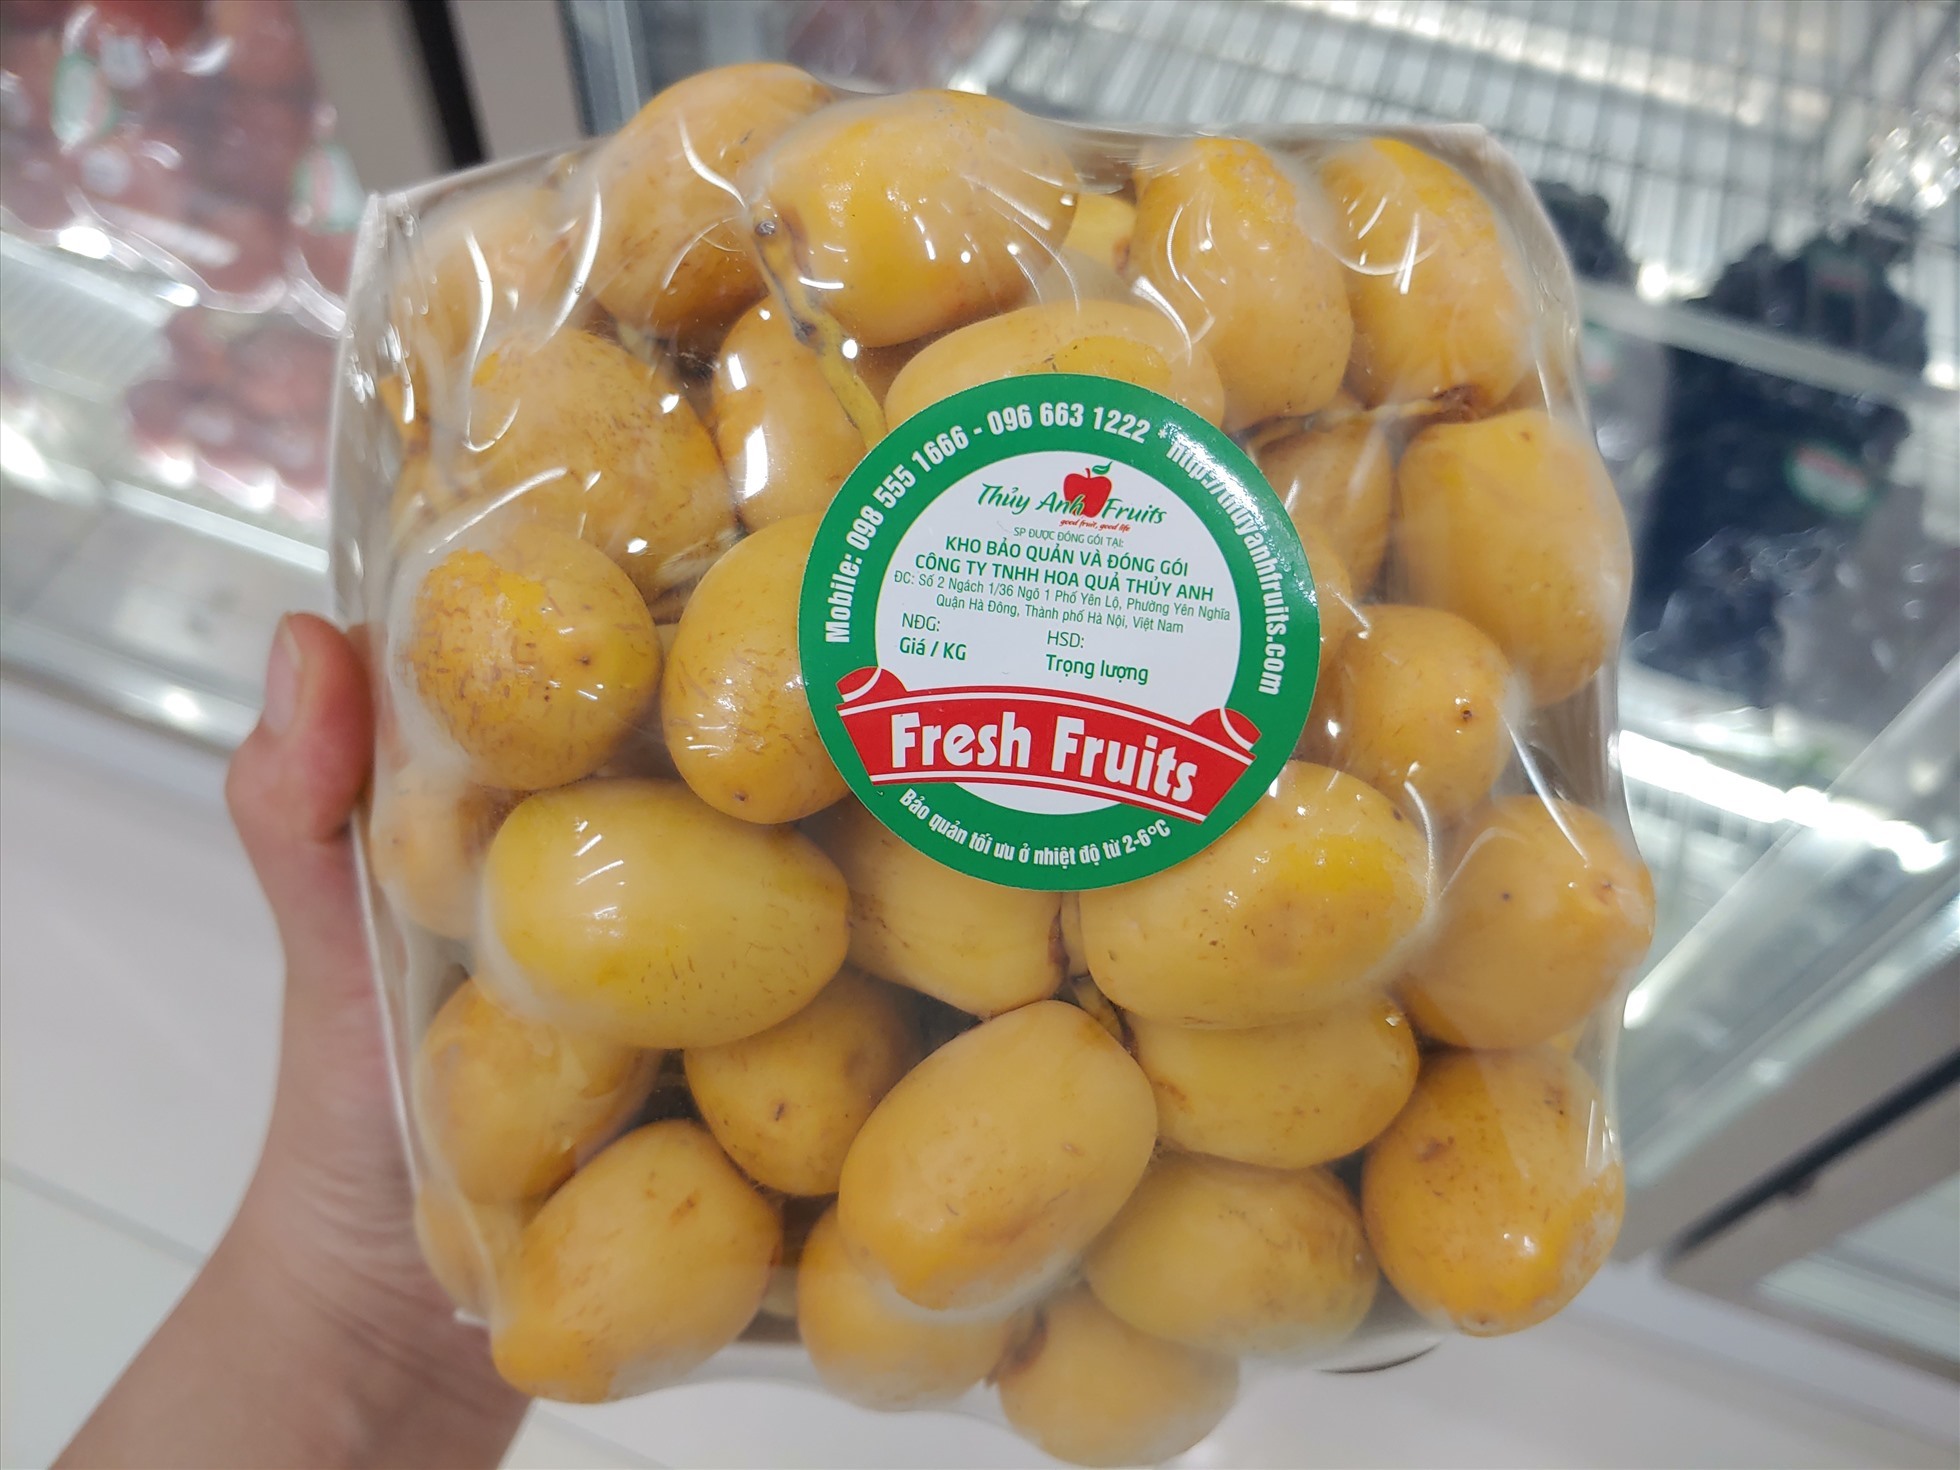 Hoa quả ngoại không rõ nguồn gốc xuất xứ được bày bán tại khắp các cửa hàng lớn nhỏ trên địa bàn thành phố Hà Nội.